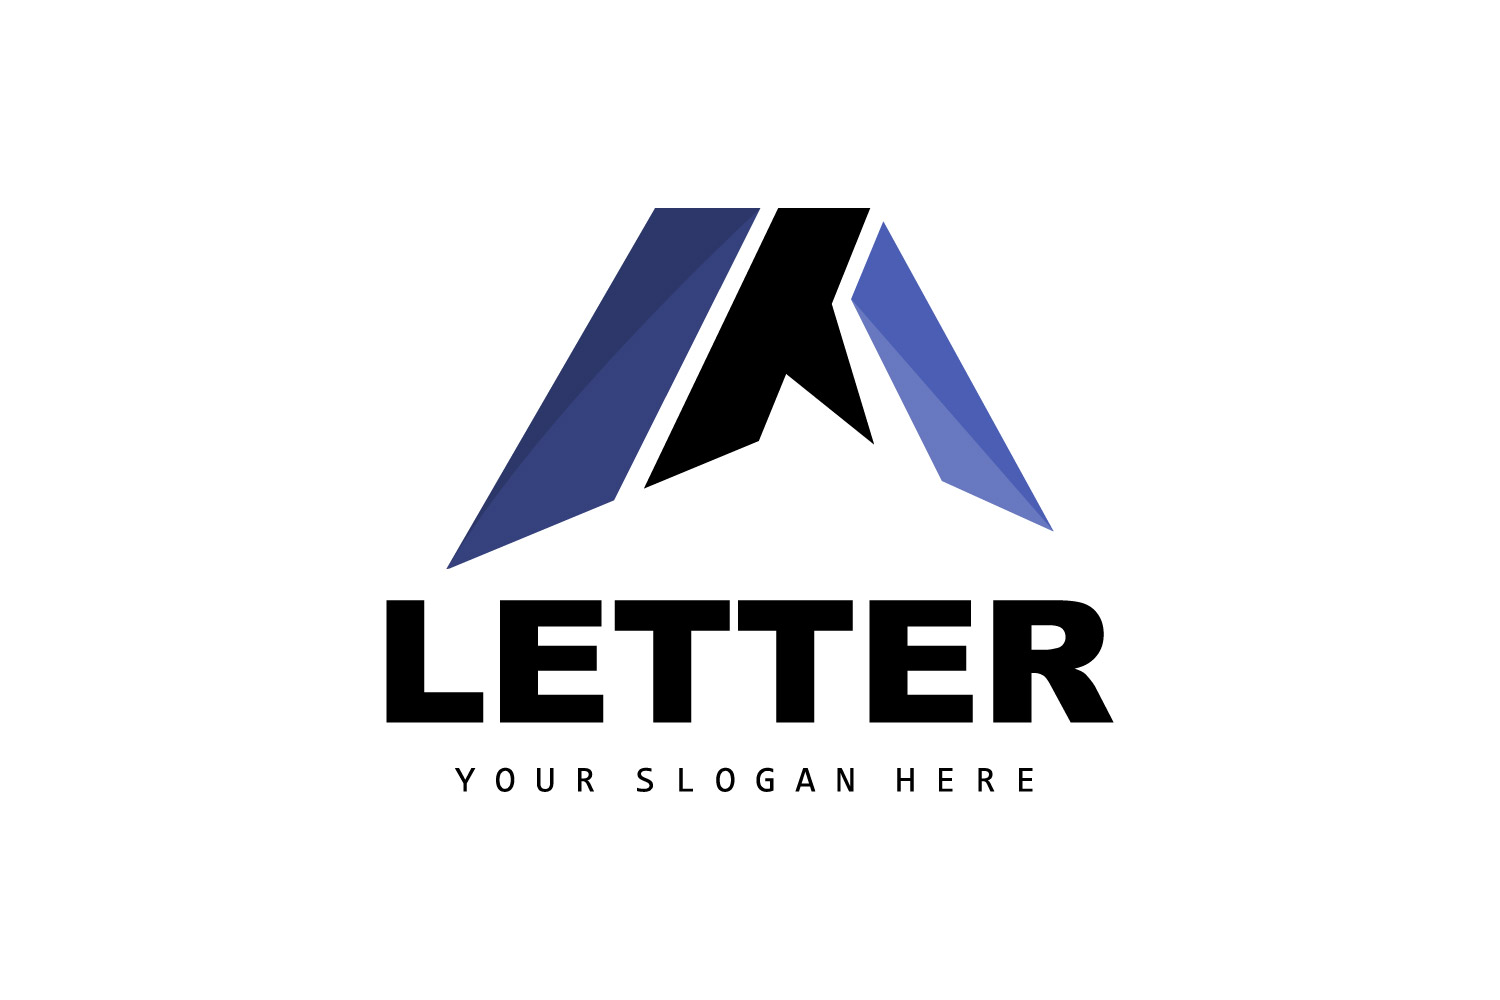 A Letter Logo Logotype Vector v3